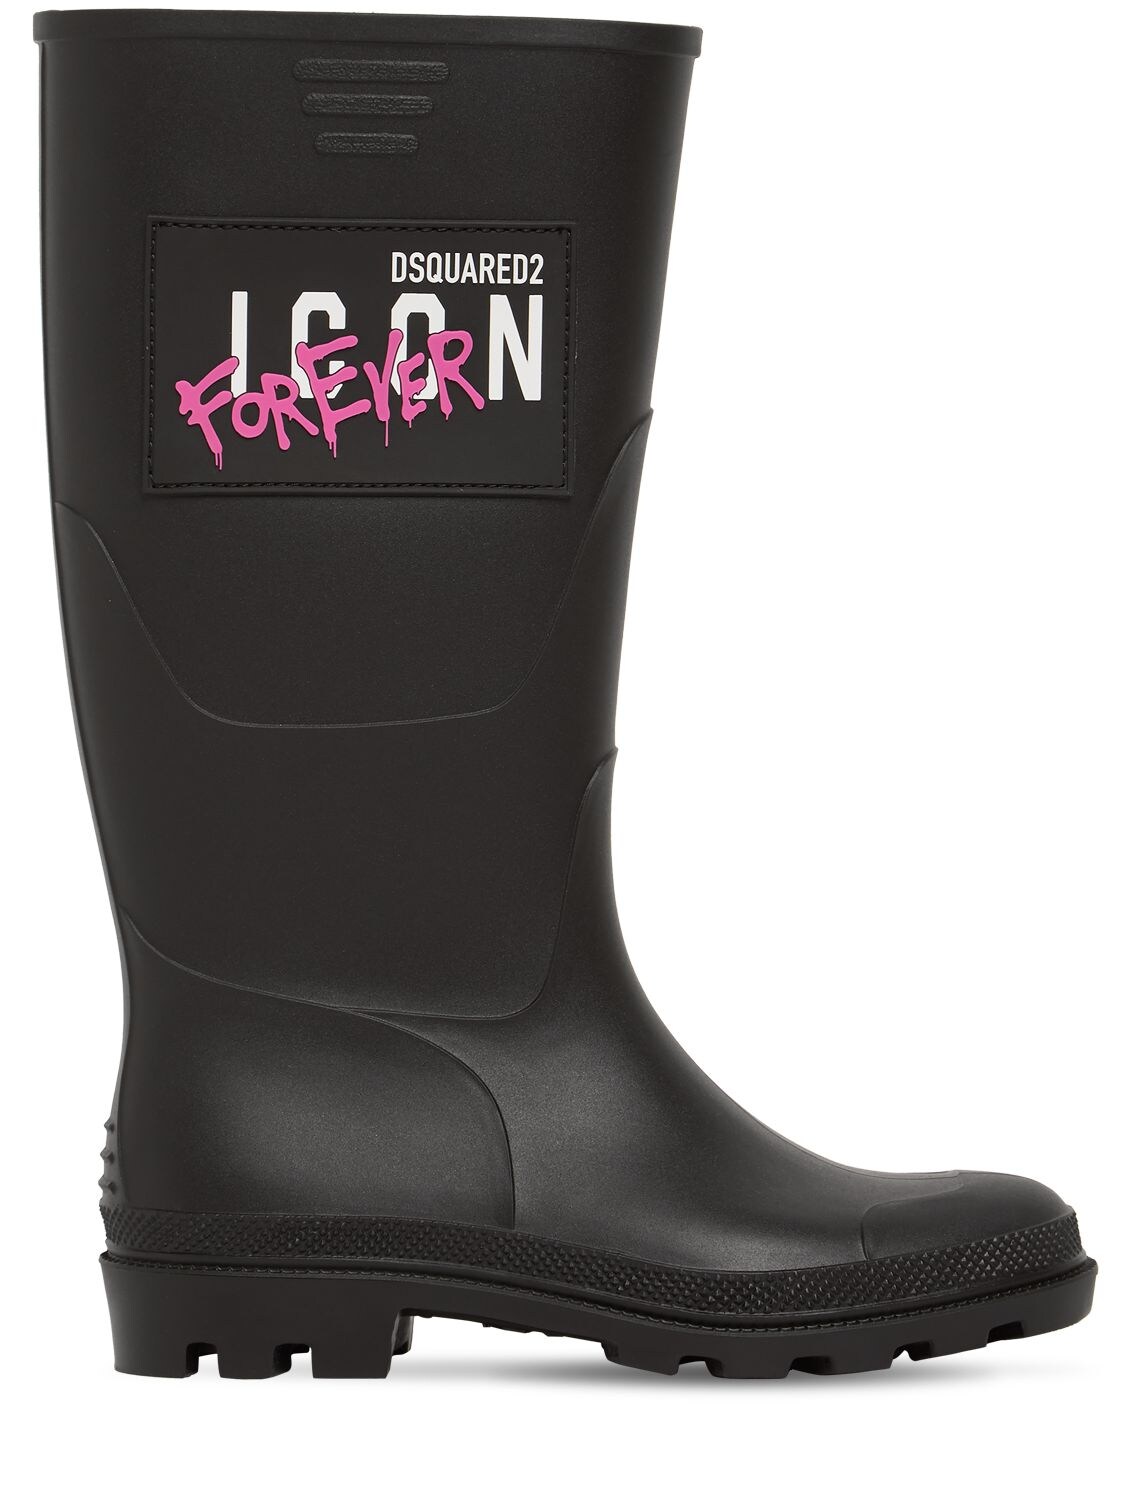 Mm Icon Forever Rubber Rain Boots - DSQUARED2 - Modalova